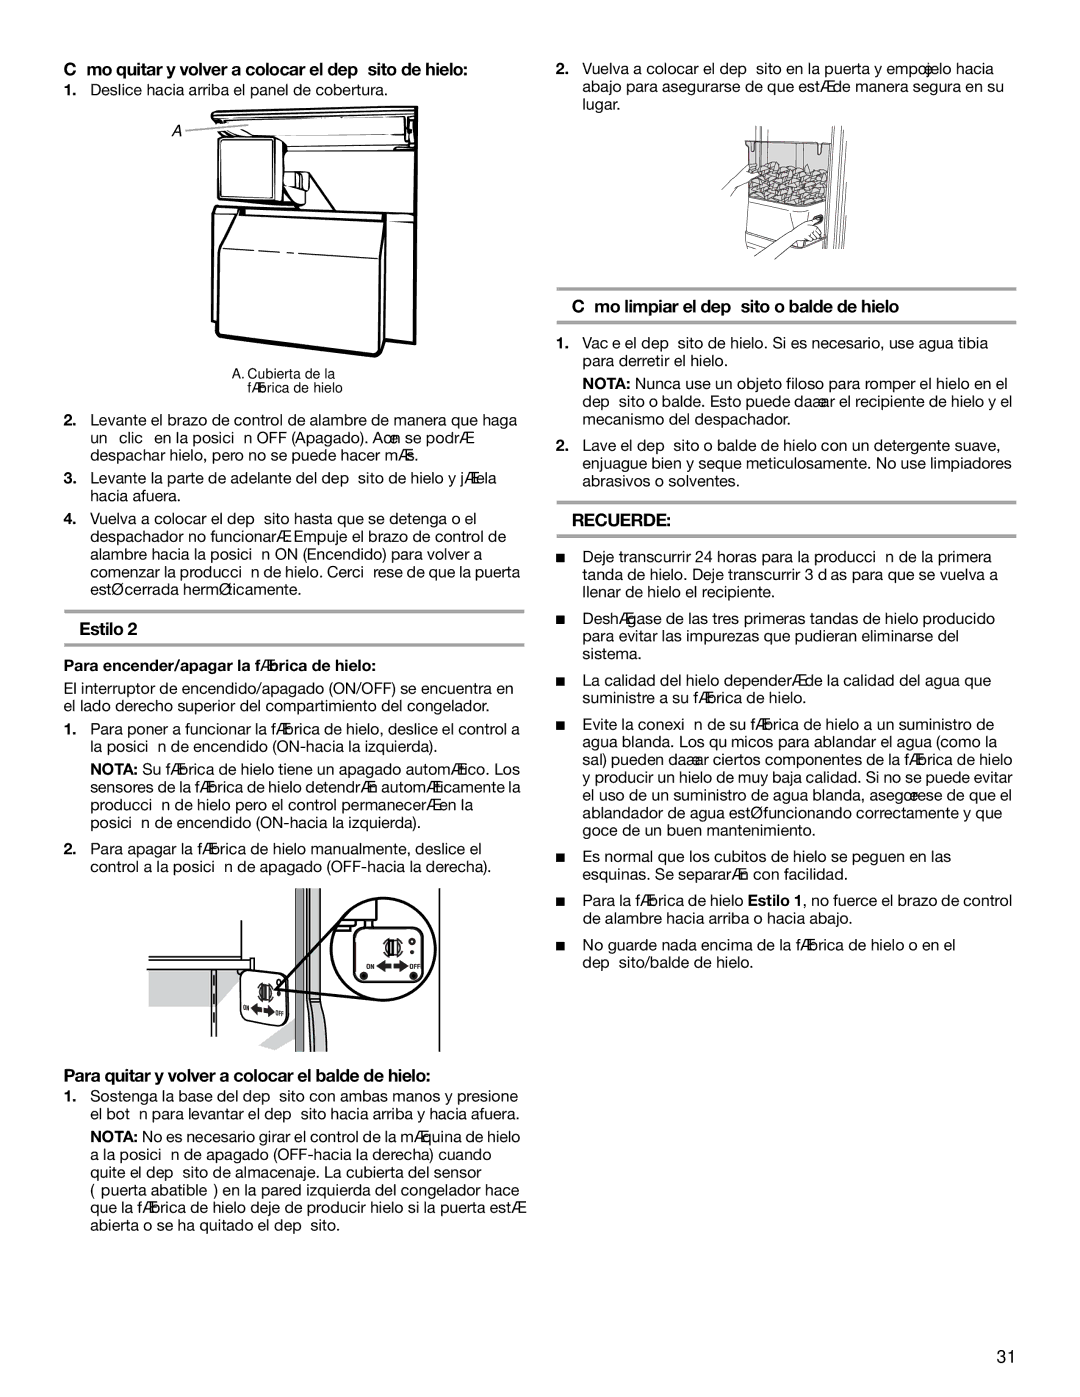 KitchenAid BUILT-IN REFRIGERATOR manual Cómo quitar y volver a colocar el depósito de hielo, Estilo 